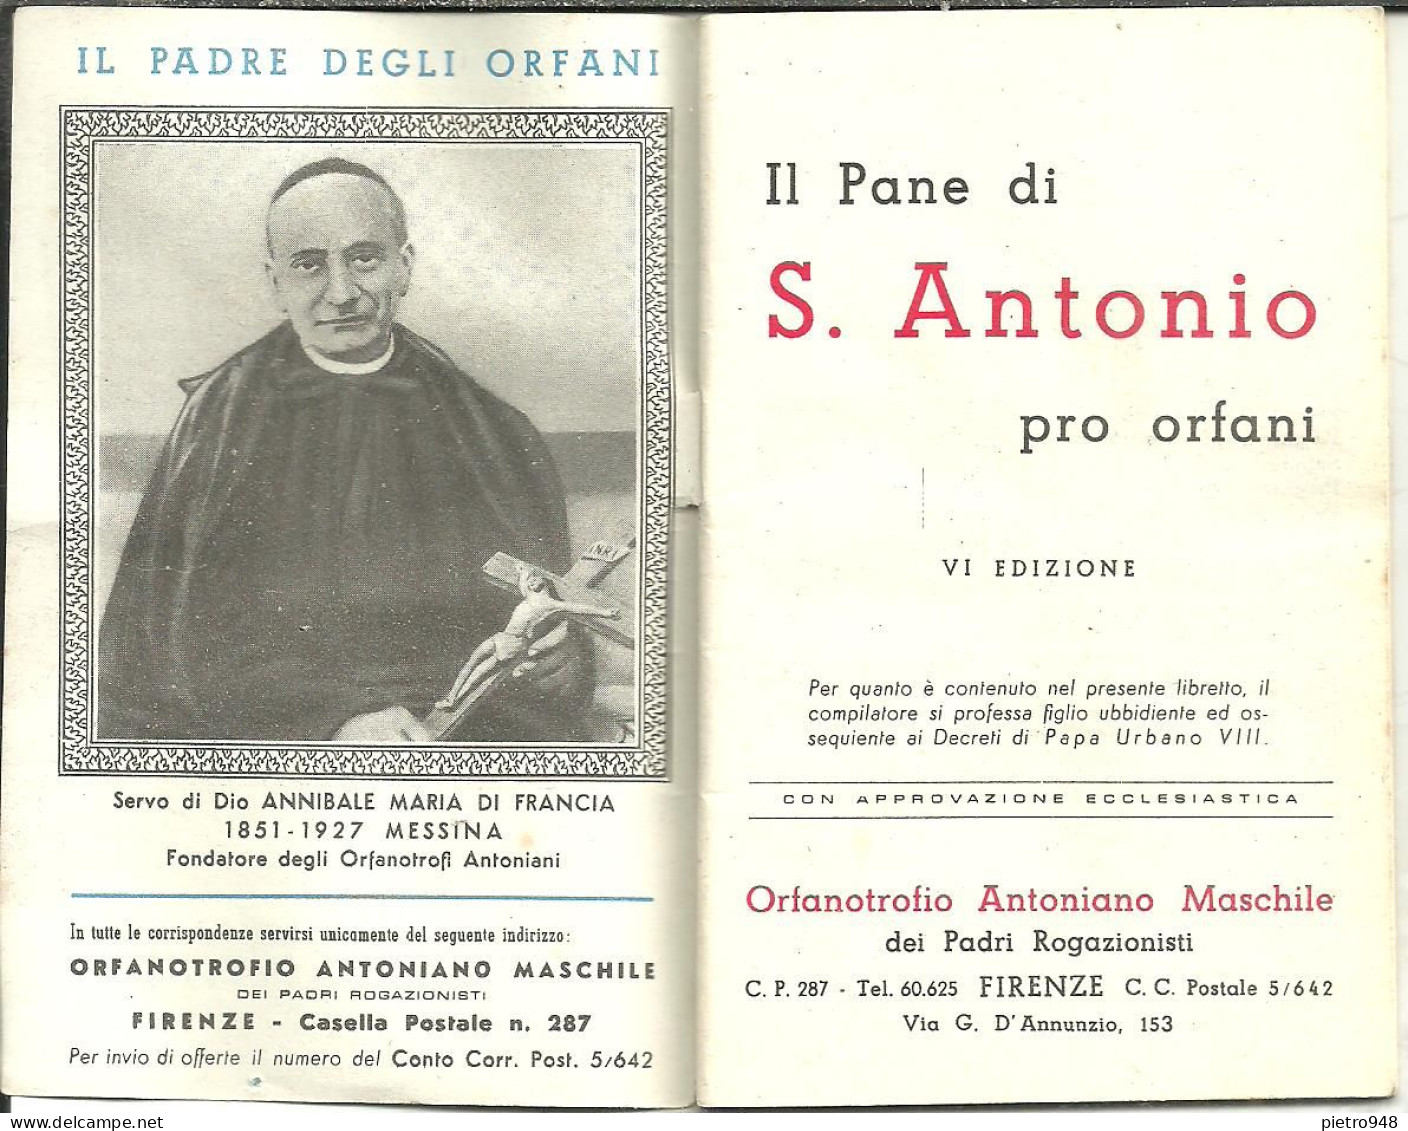 Libro (Libretto) Religioso, "Il Pane Di Sant'Antonio Pro Orfani", Orfanotrofio Antoniano Maschile, Firenze - Religion/ Spirituality